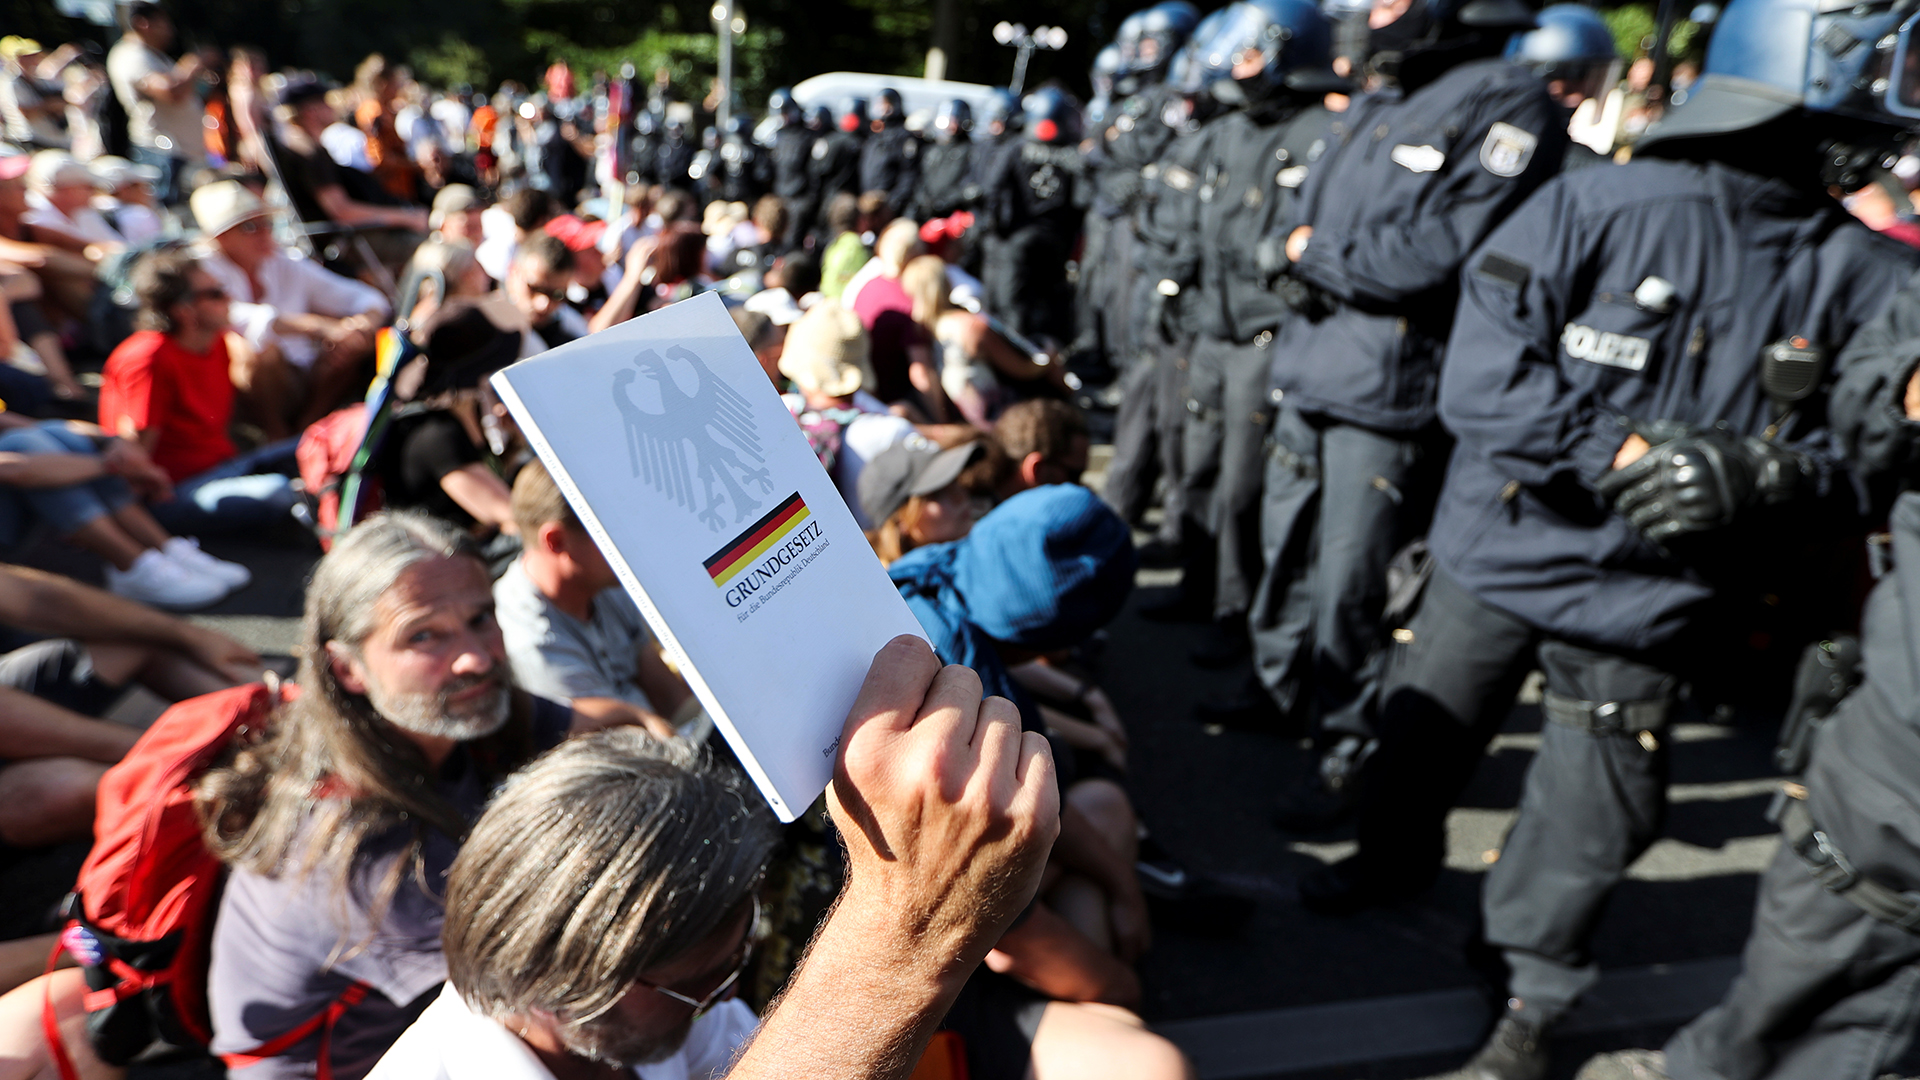 Kundgebung in Berlin gegen die Corona-Beschränkungen | REUTERS